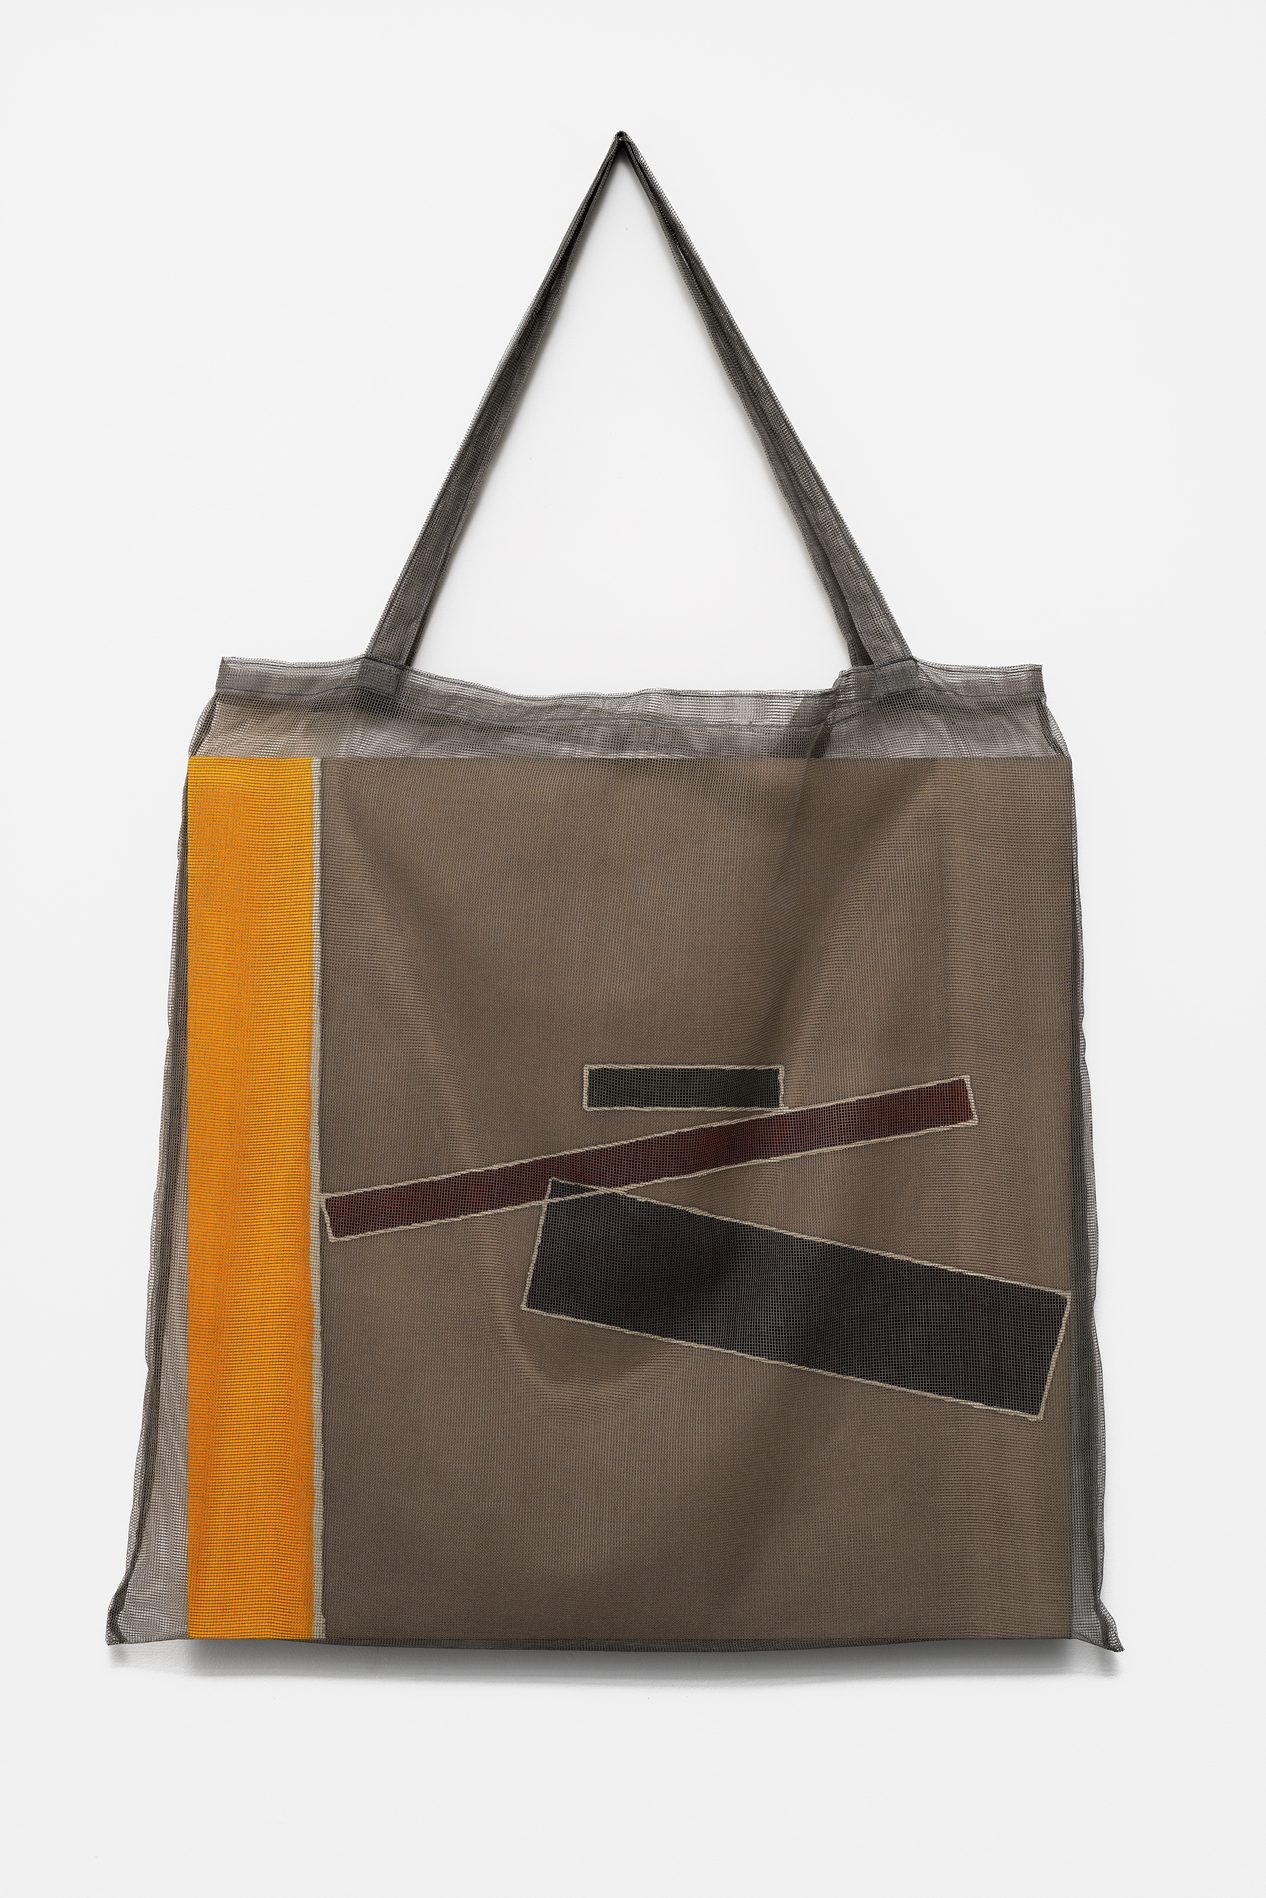 , 2019, Pigment on cotton(batik) and bag, 100 x 60 x 3 cm, , Photo: Aurlien Mole